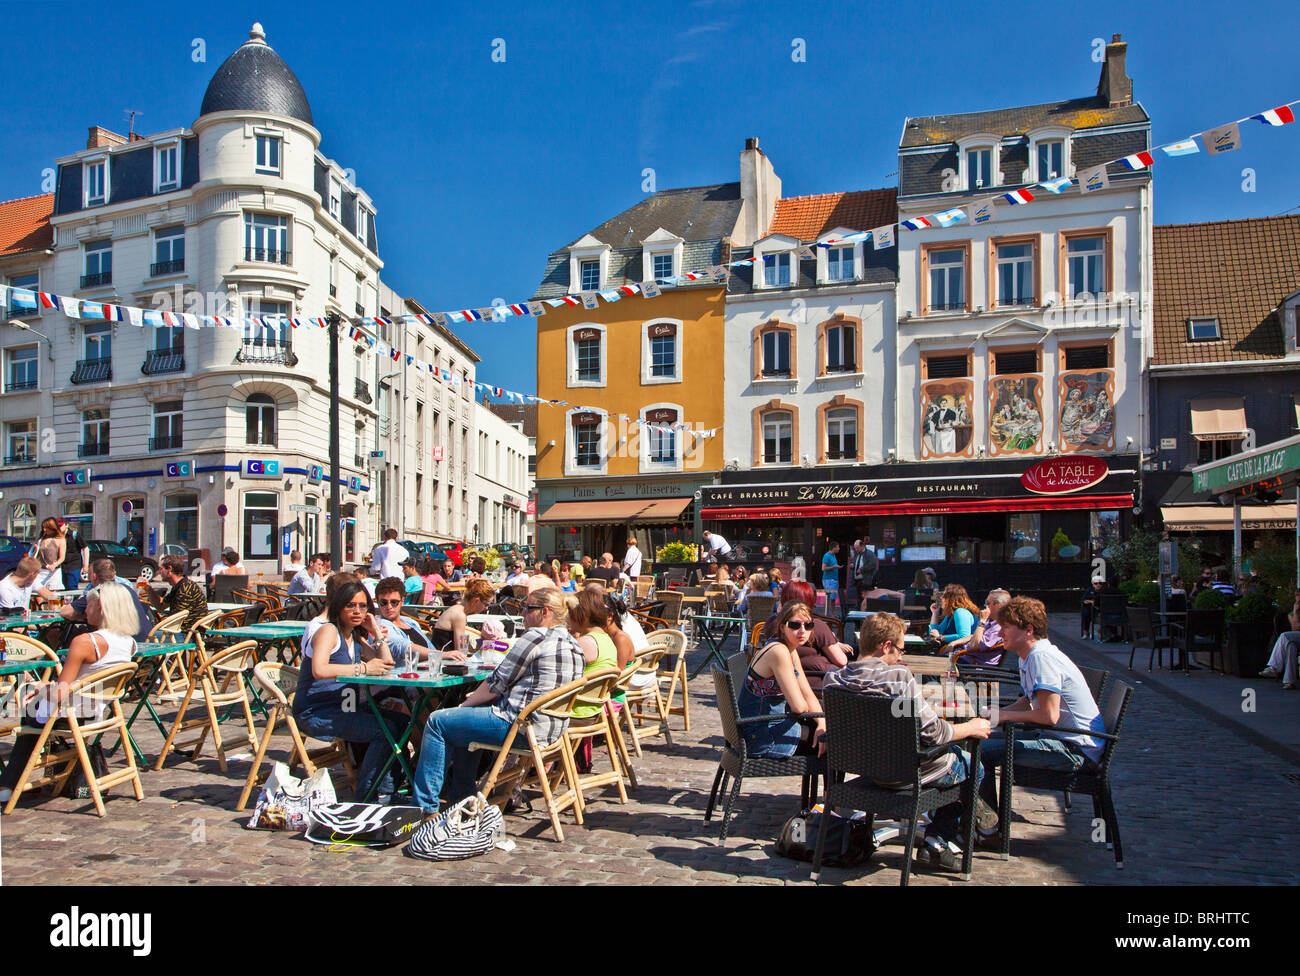 La gente disfruta del sol y charlando en un café al aire libre en el lugar Dalton en Boulogne, Francia Foto de stock